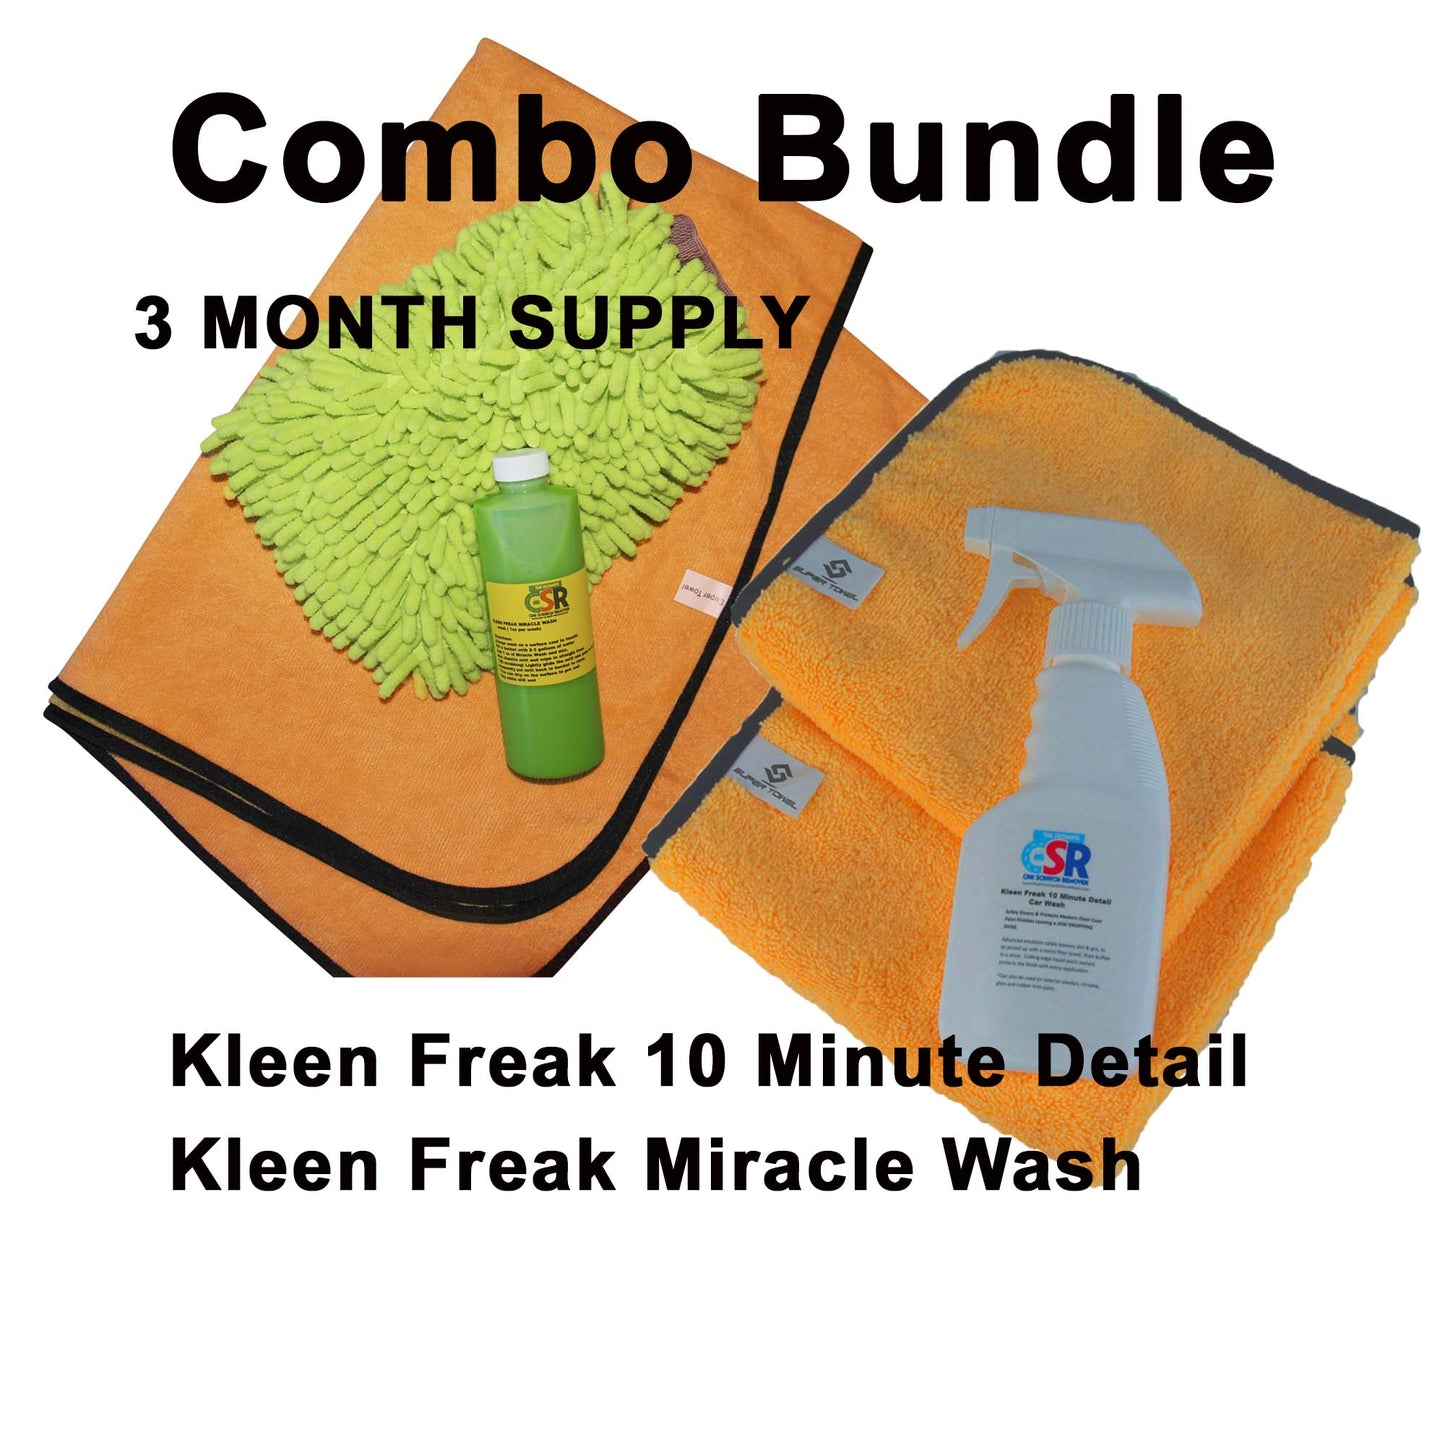 Kleen Freak Combo Bundle 3 month supply